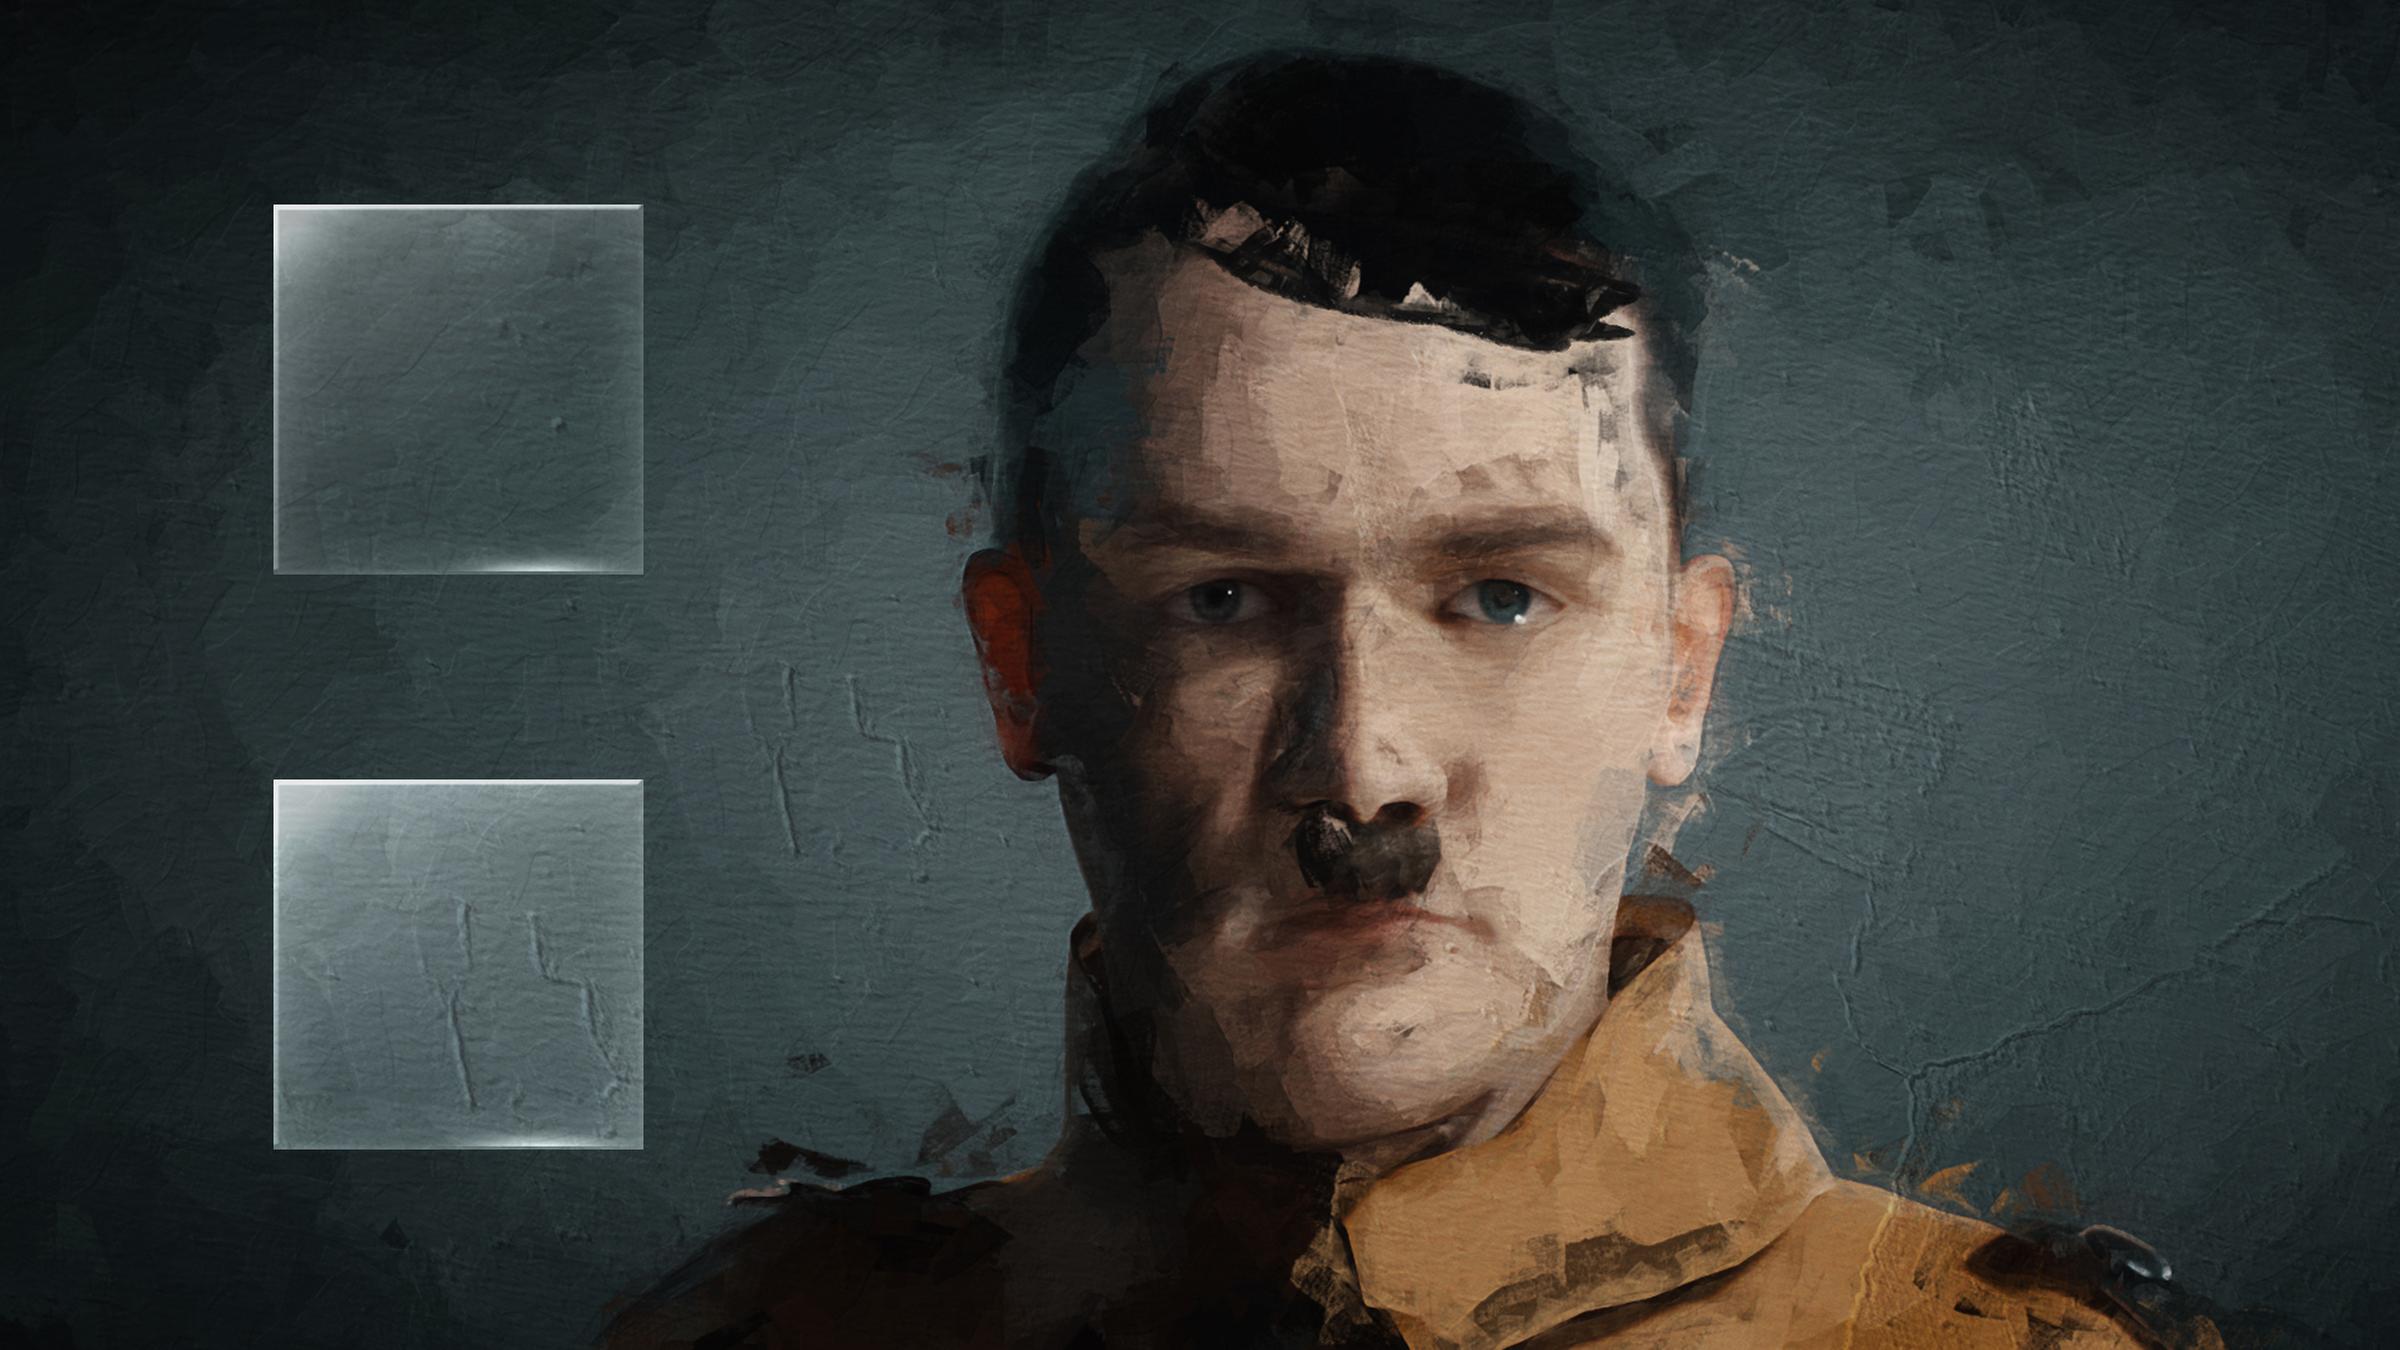 Graphic-Novel-Motiv, das Adolf Hitler in braunem Hemd vor grauer Wand zeigt.